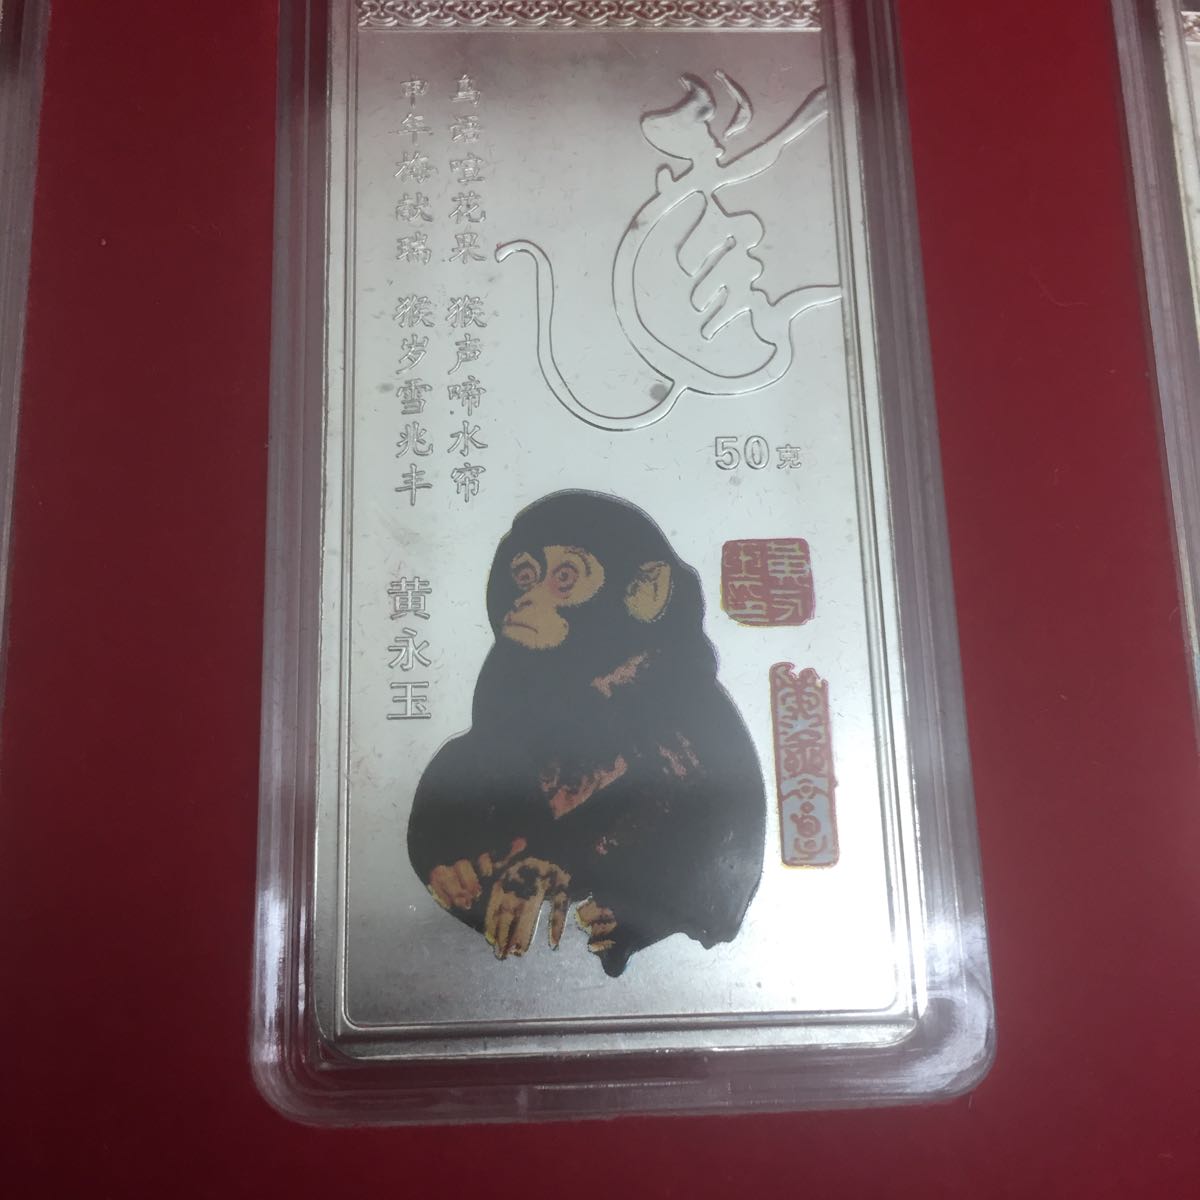 中國銀幣十二生肖12套銅製老硬幣全套珍稀紅猴等豪華 原文:中国 銀貨 干支 12枚セット 銅製　古銭 フルセット 希少 赤猿など 豪華